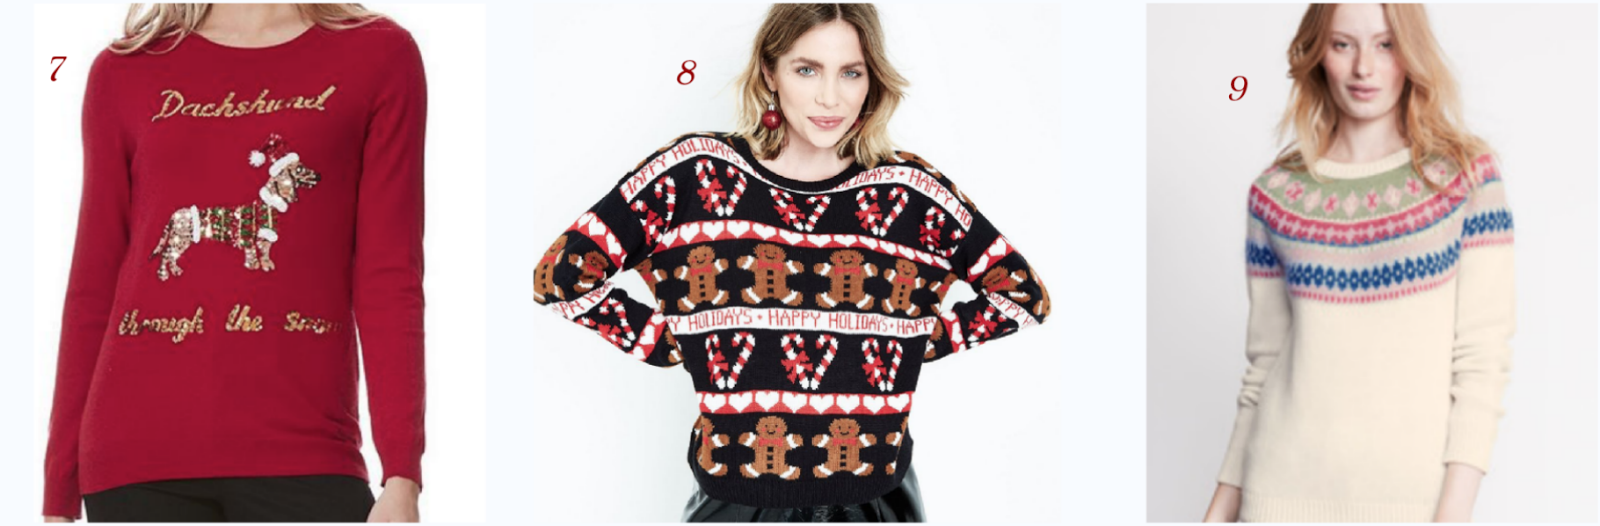 Christmas-jumper-edit-Tesco-Boden-New-Look-knit-wear-festive